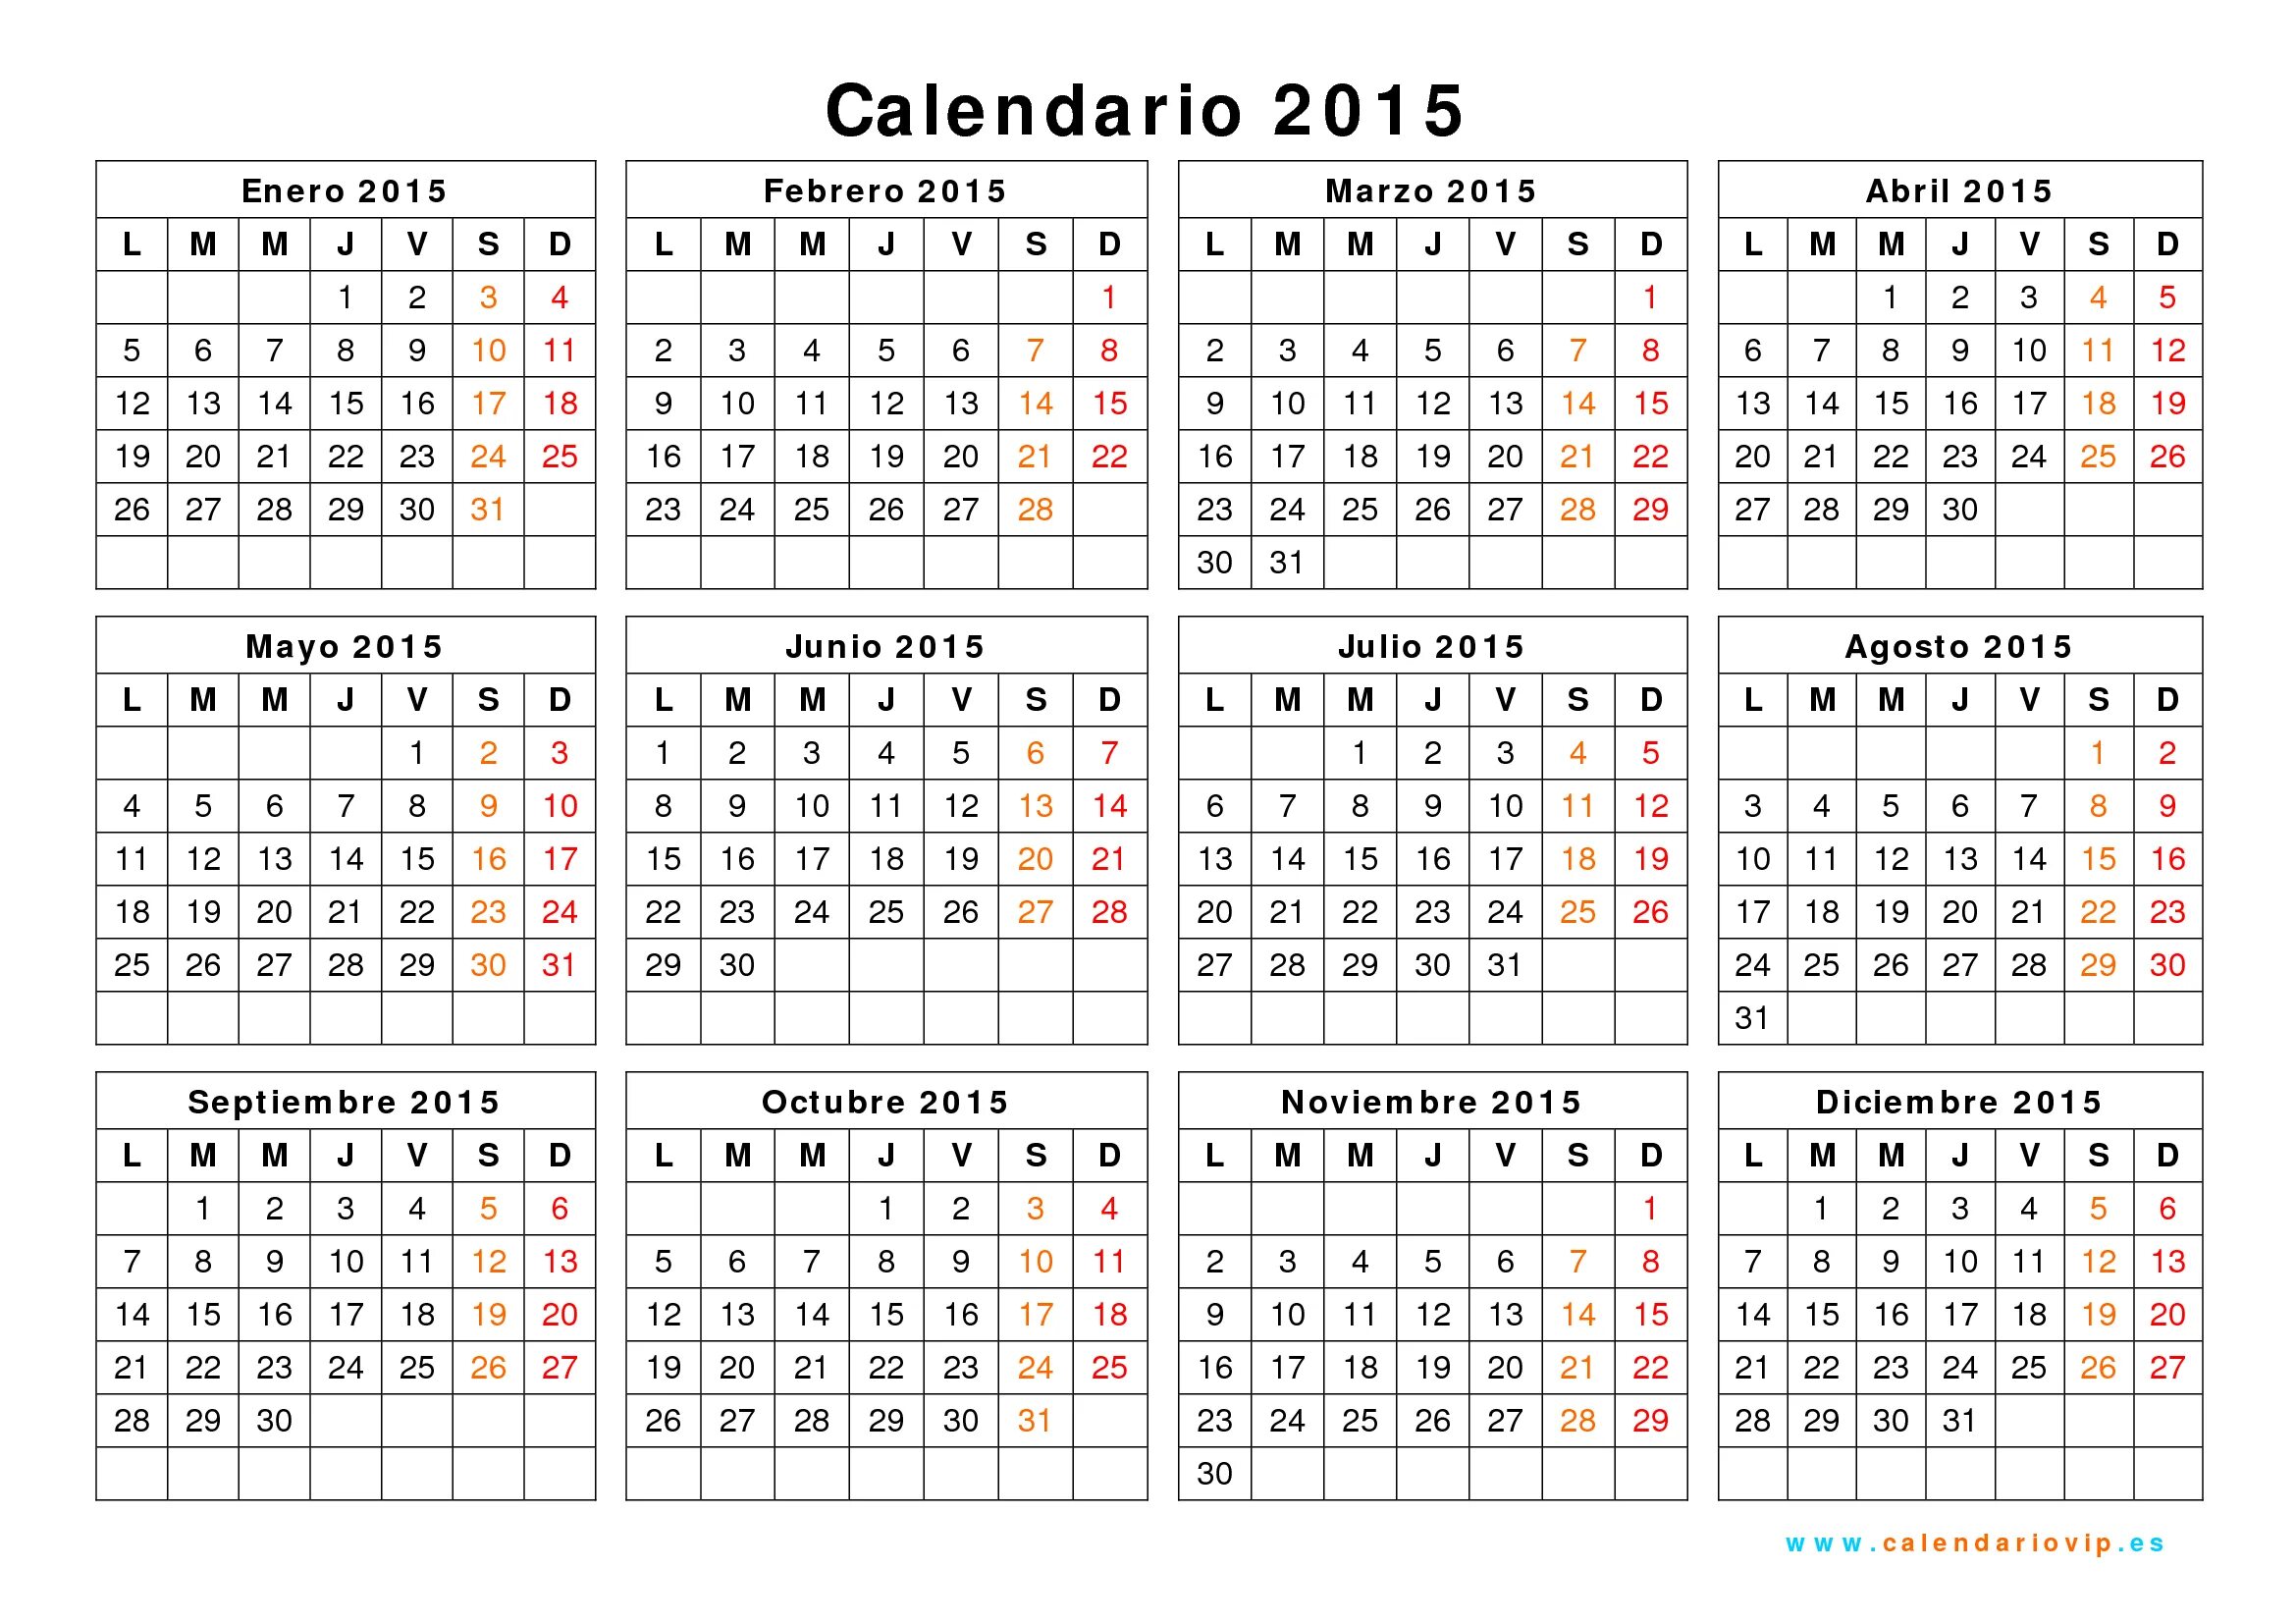 Календарь 2016. Календарь 2015. Календарь 2016 года по месяцам. Календарь 2016г.по месяцам.